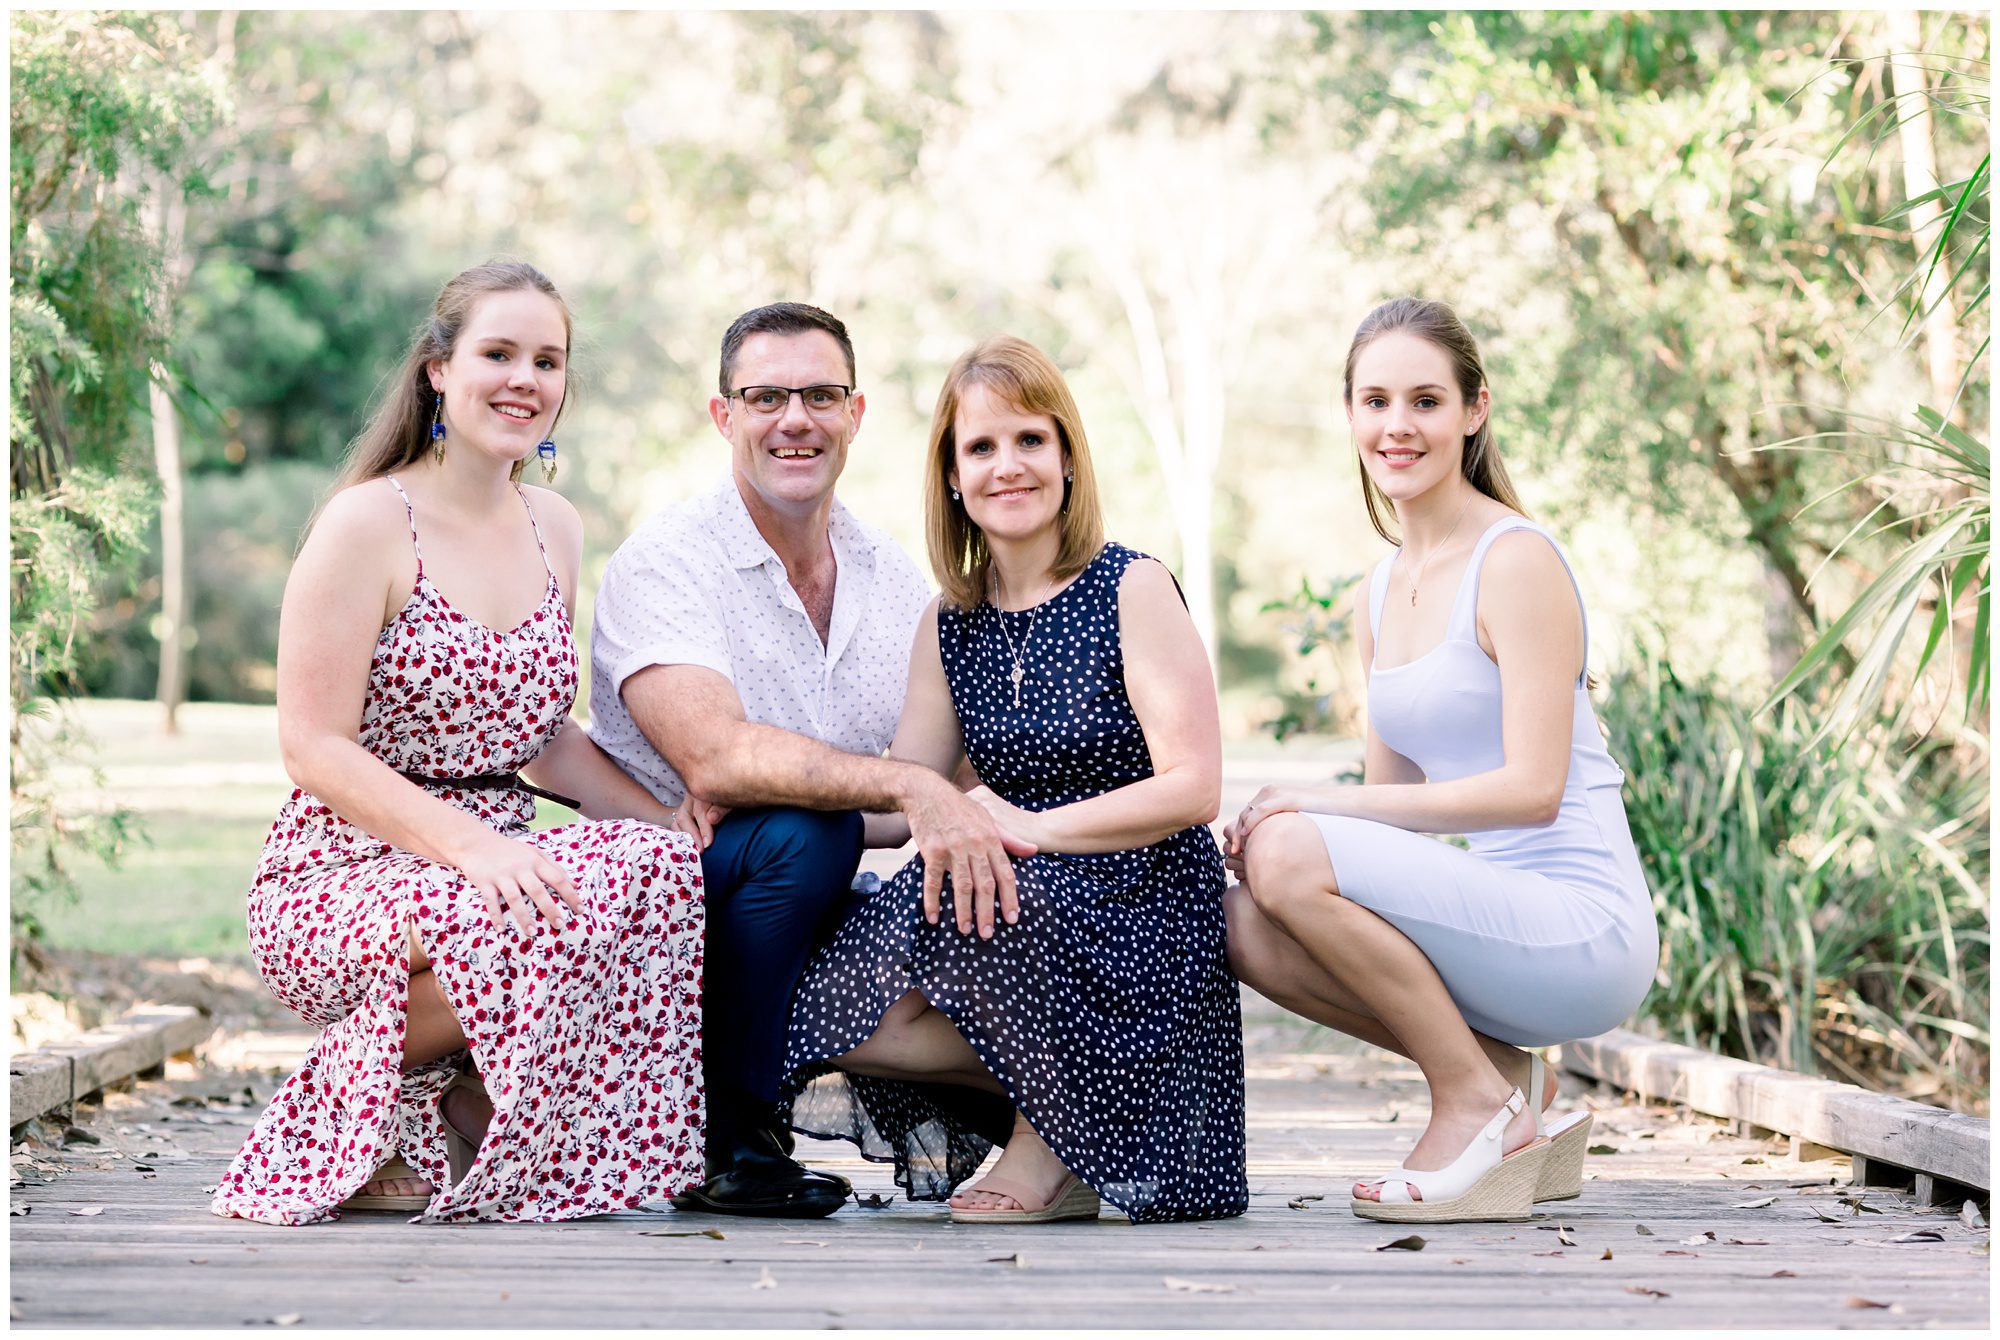 Brisbane Family Photography, Brisbane Family Photographer, Family photos Brisbane 